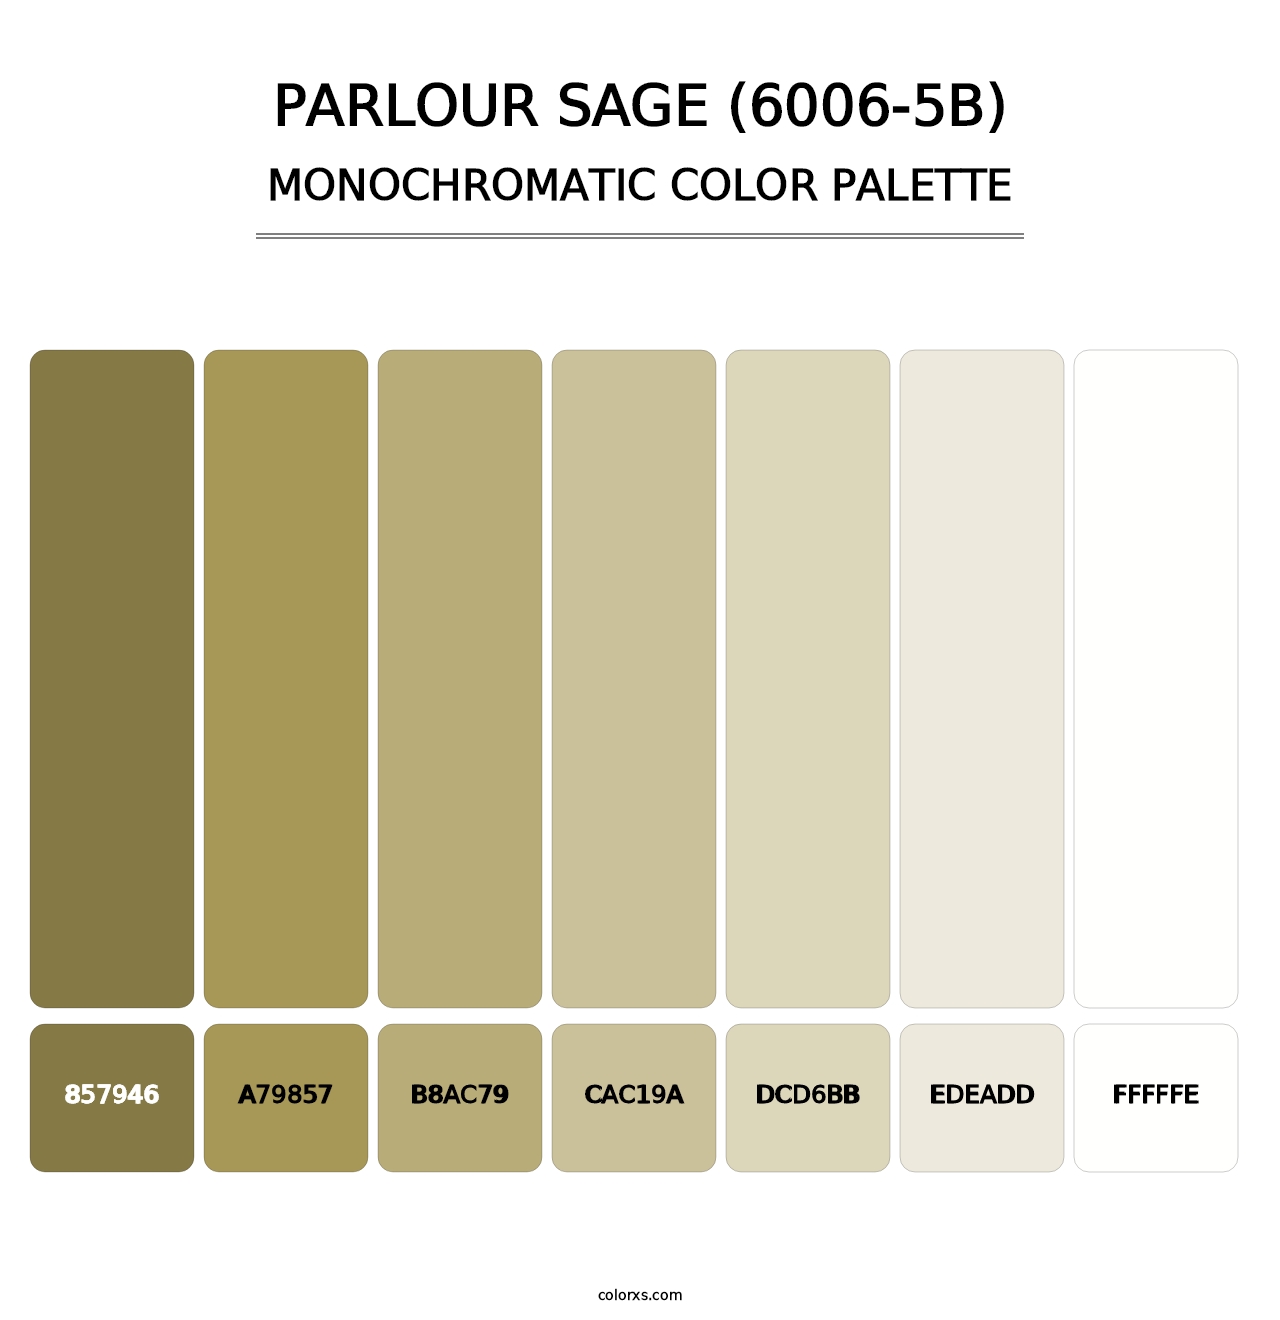 Parlour Sage (6006-5B) - Monochromatic Color Palette